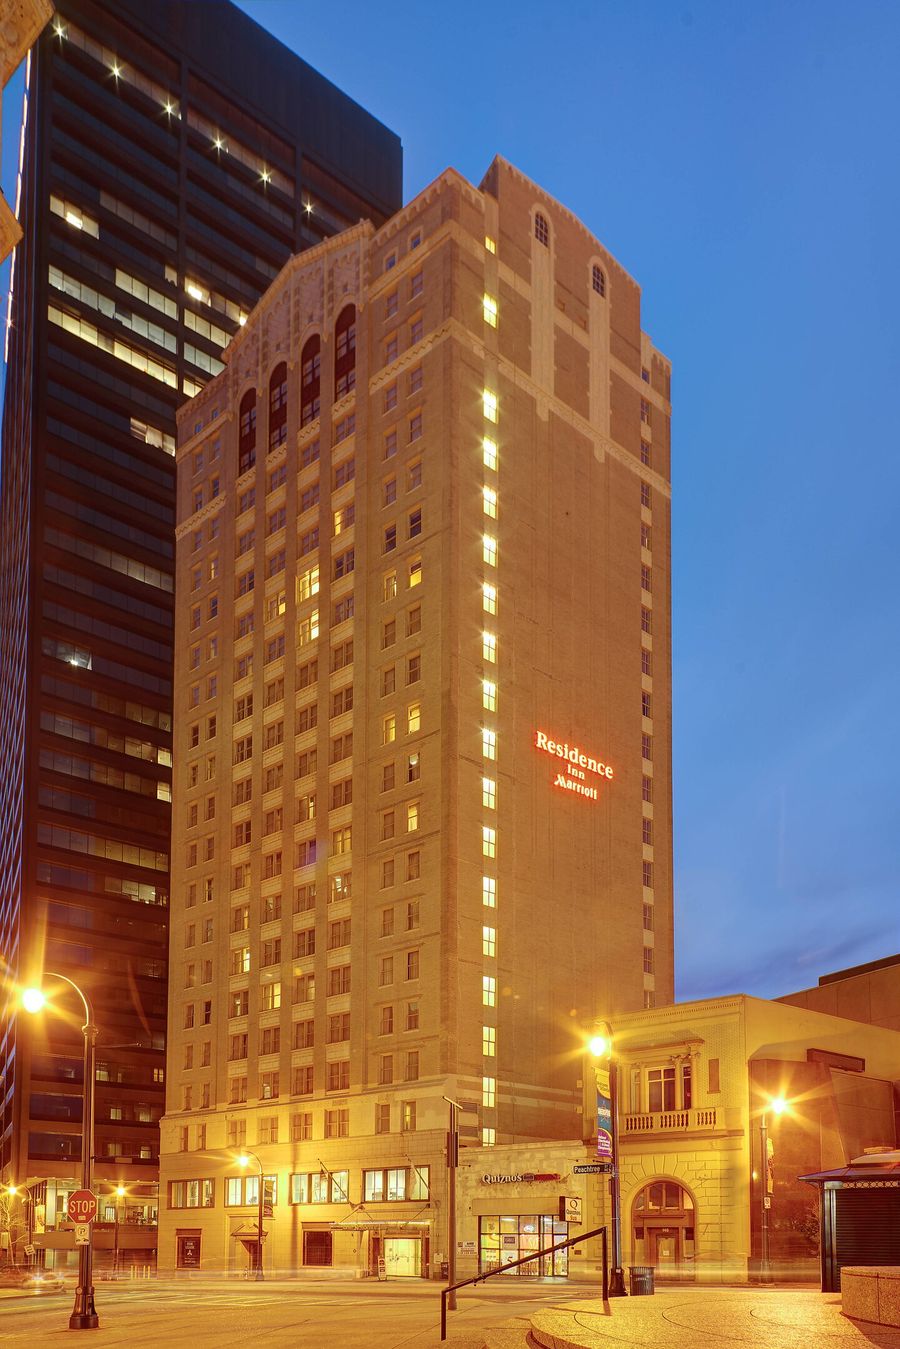 Marriott Hotels in Atlanta